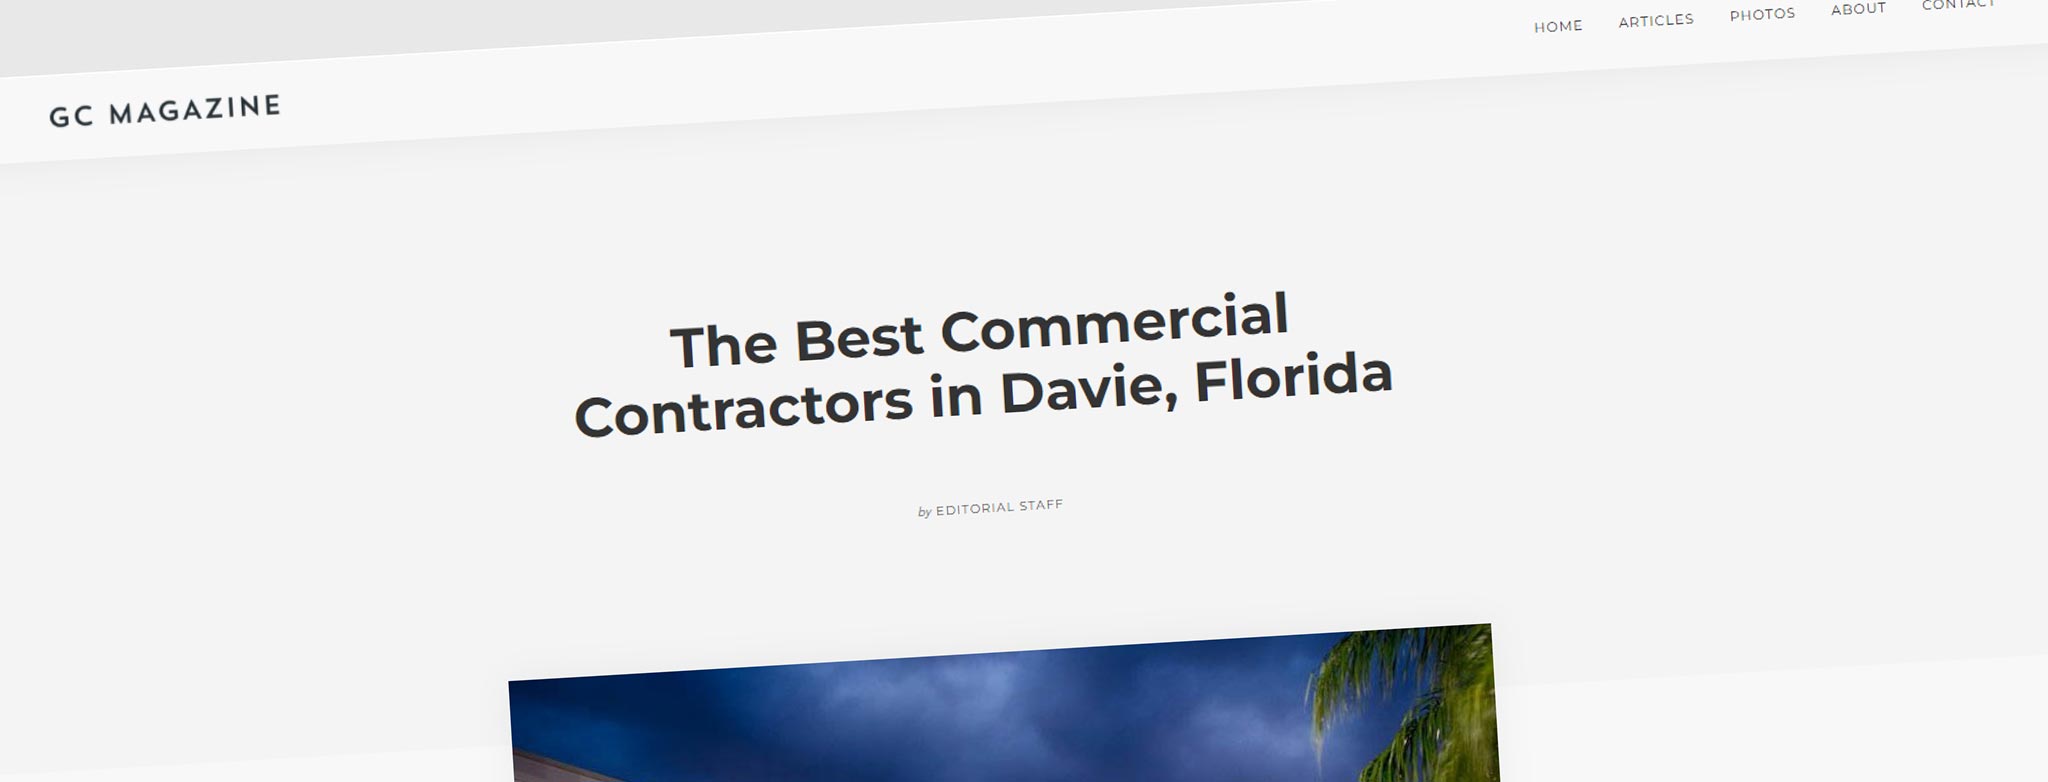 Best Commercial Contractors in Davie Florida